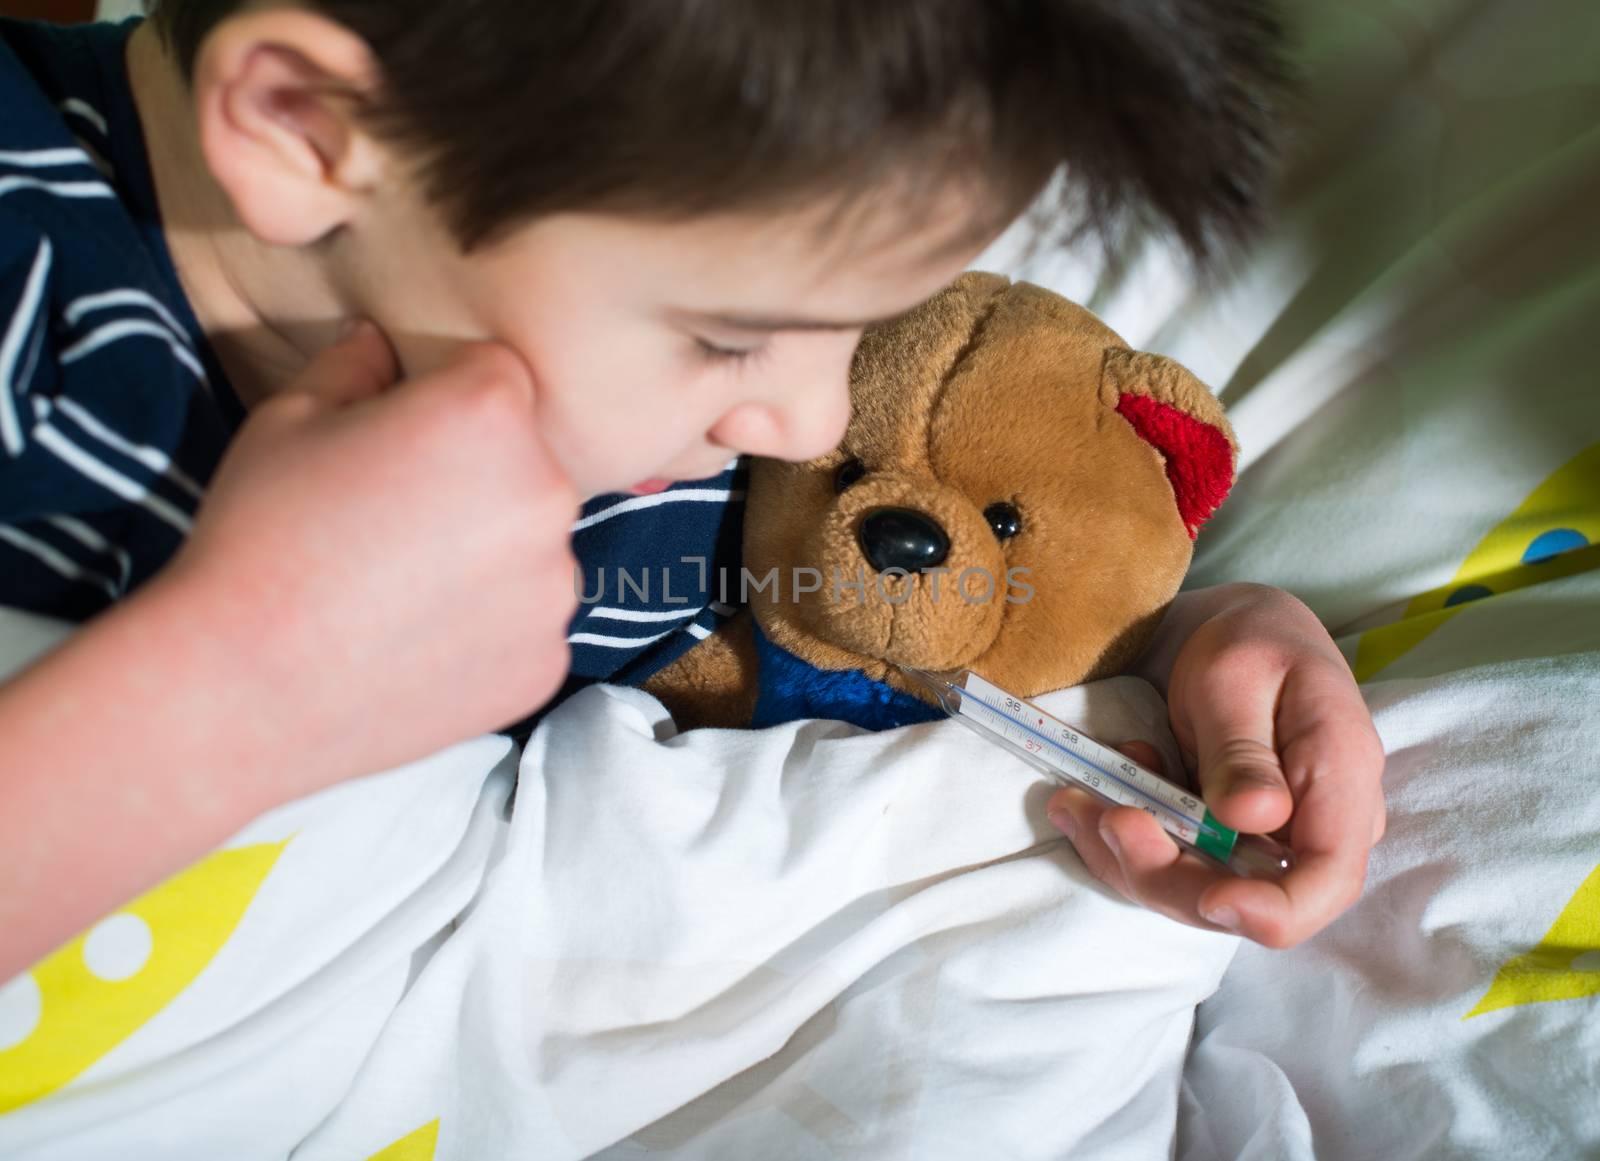 Sick child in bed with teddy bear by deyan_georgiev